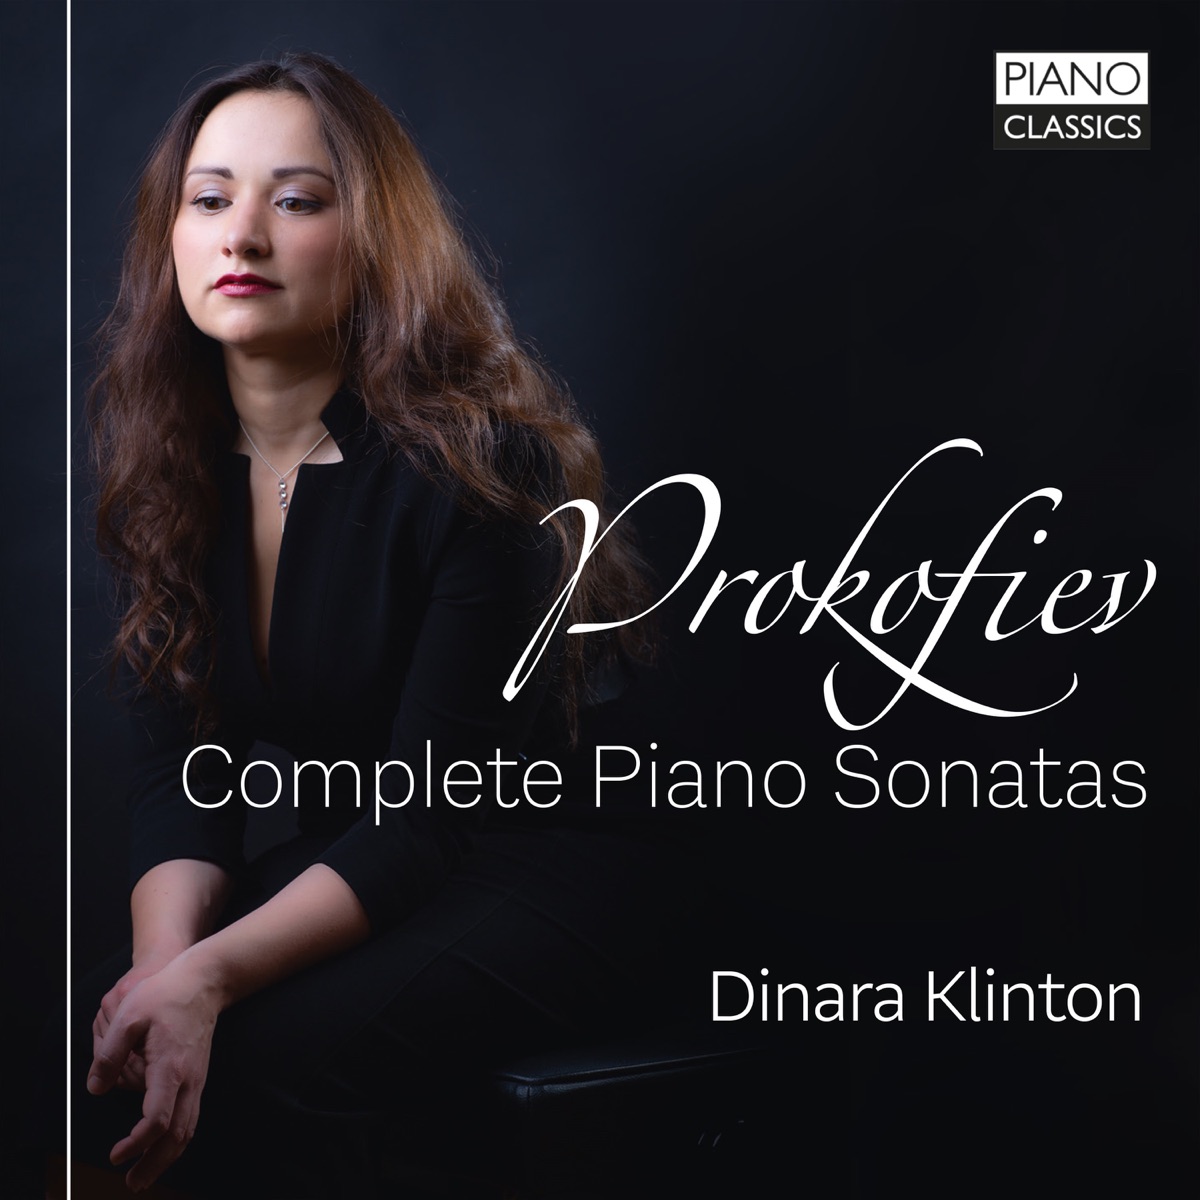 Prokofiev: Complete Piano Sonatas - Album by Dinara Klinton - Apple Music